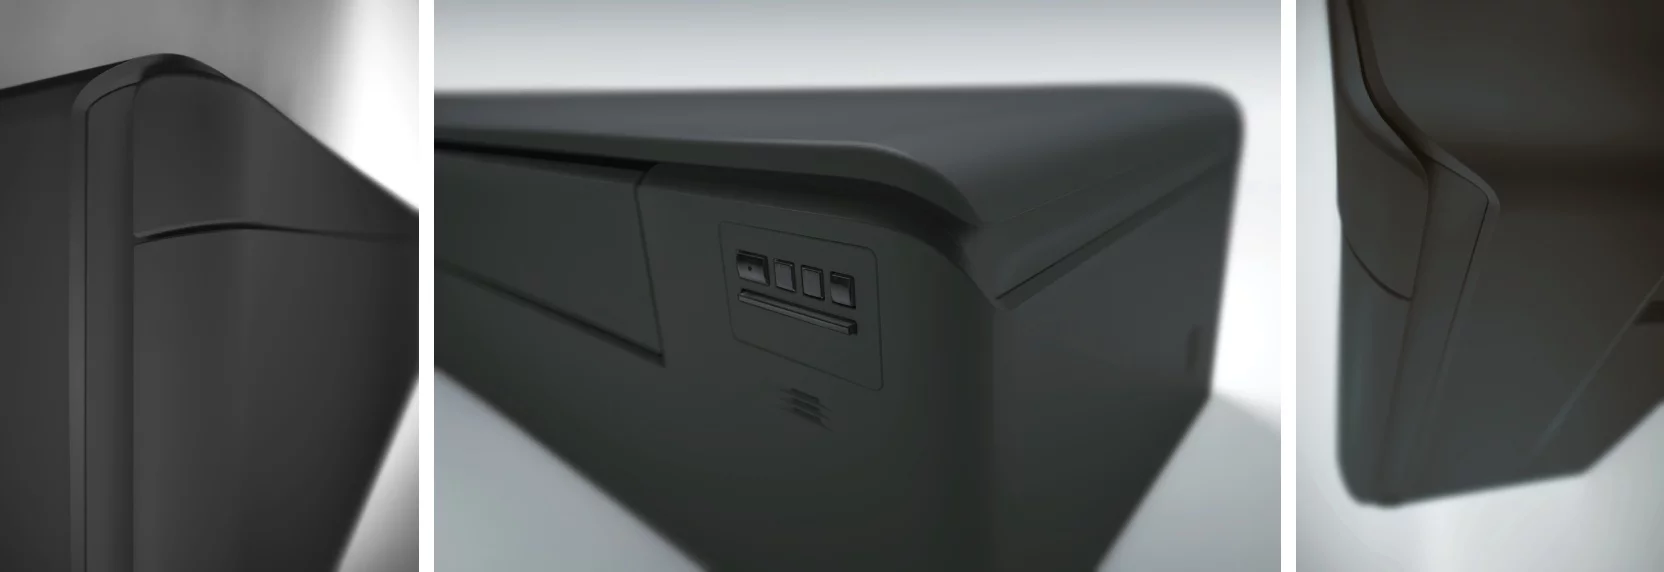 Daikin Stylish FTXA Black - detalii unitate interioara